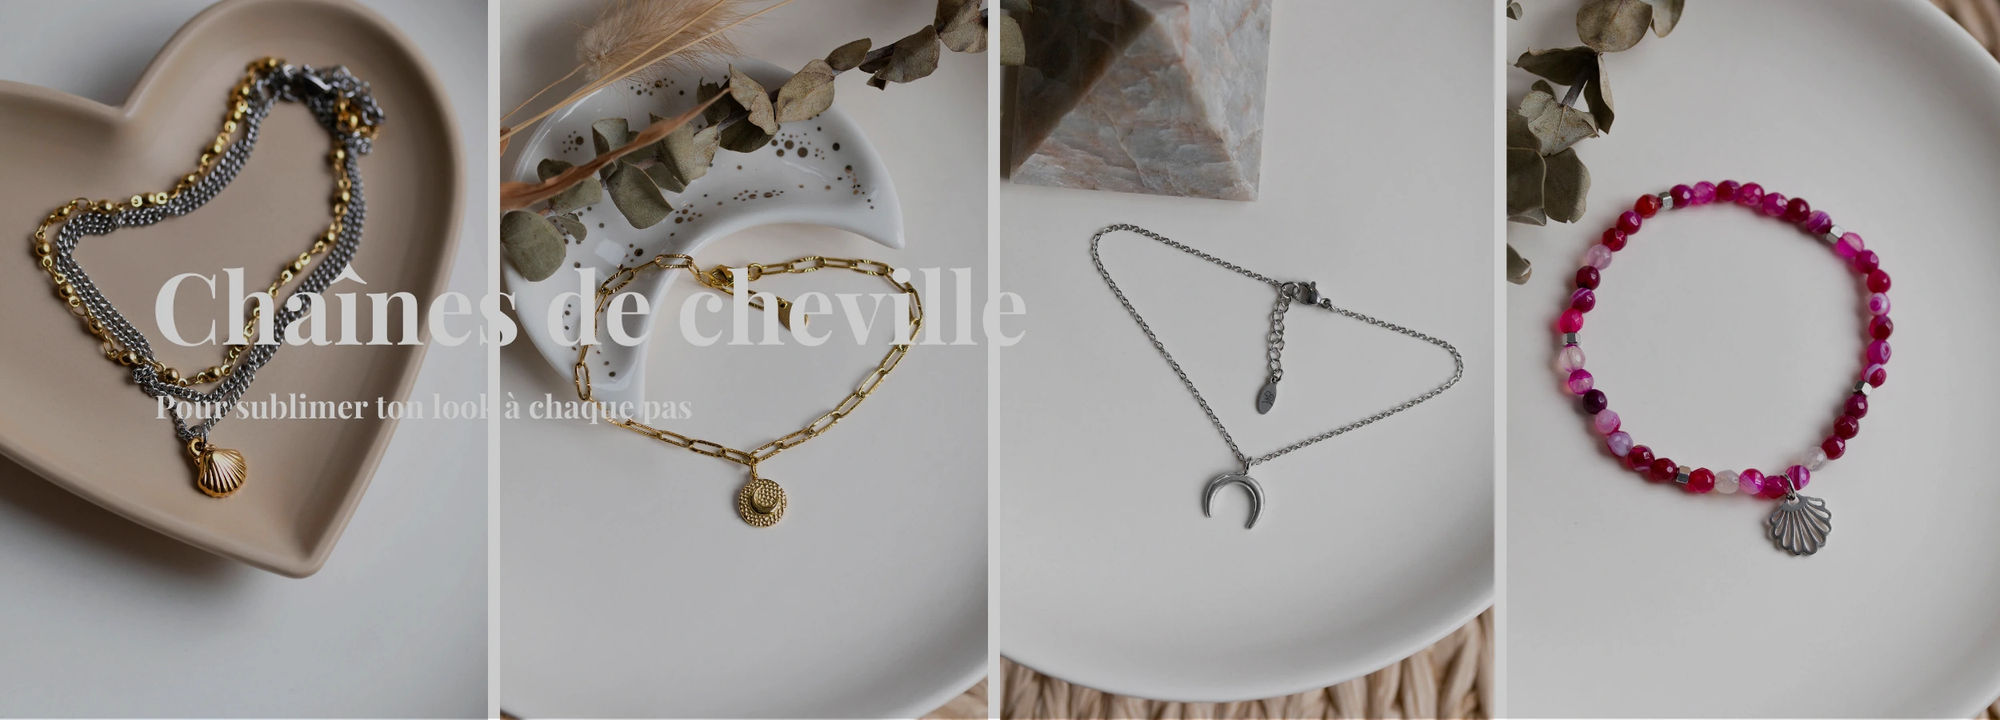 Ban collection chaines de cheville - Milie bijoux